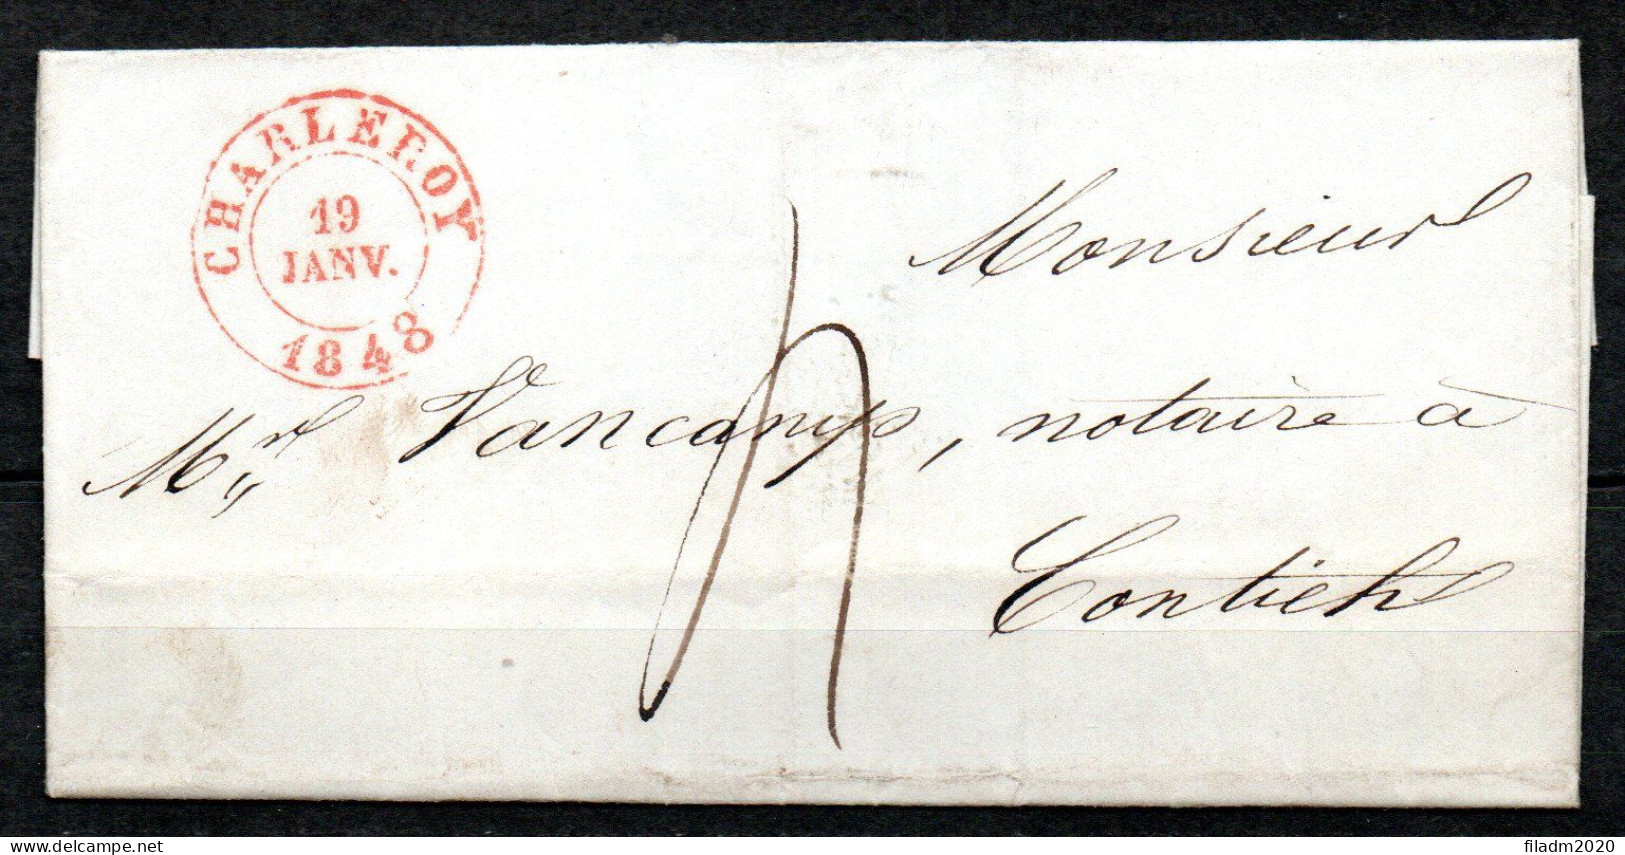 Voorloper/Précurseur Van CHARLEROY Naar CONTICH 19 Janv 1848 Met Tekstbrief - 1830-1849 (Independent Belgium)